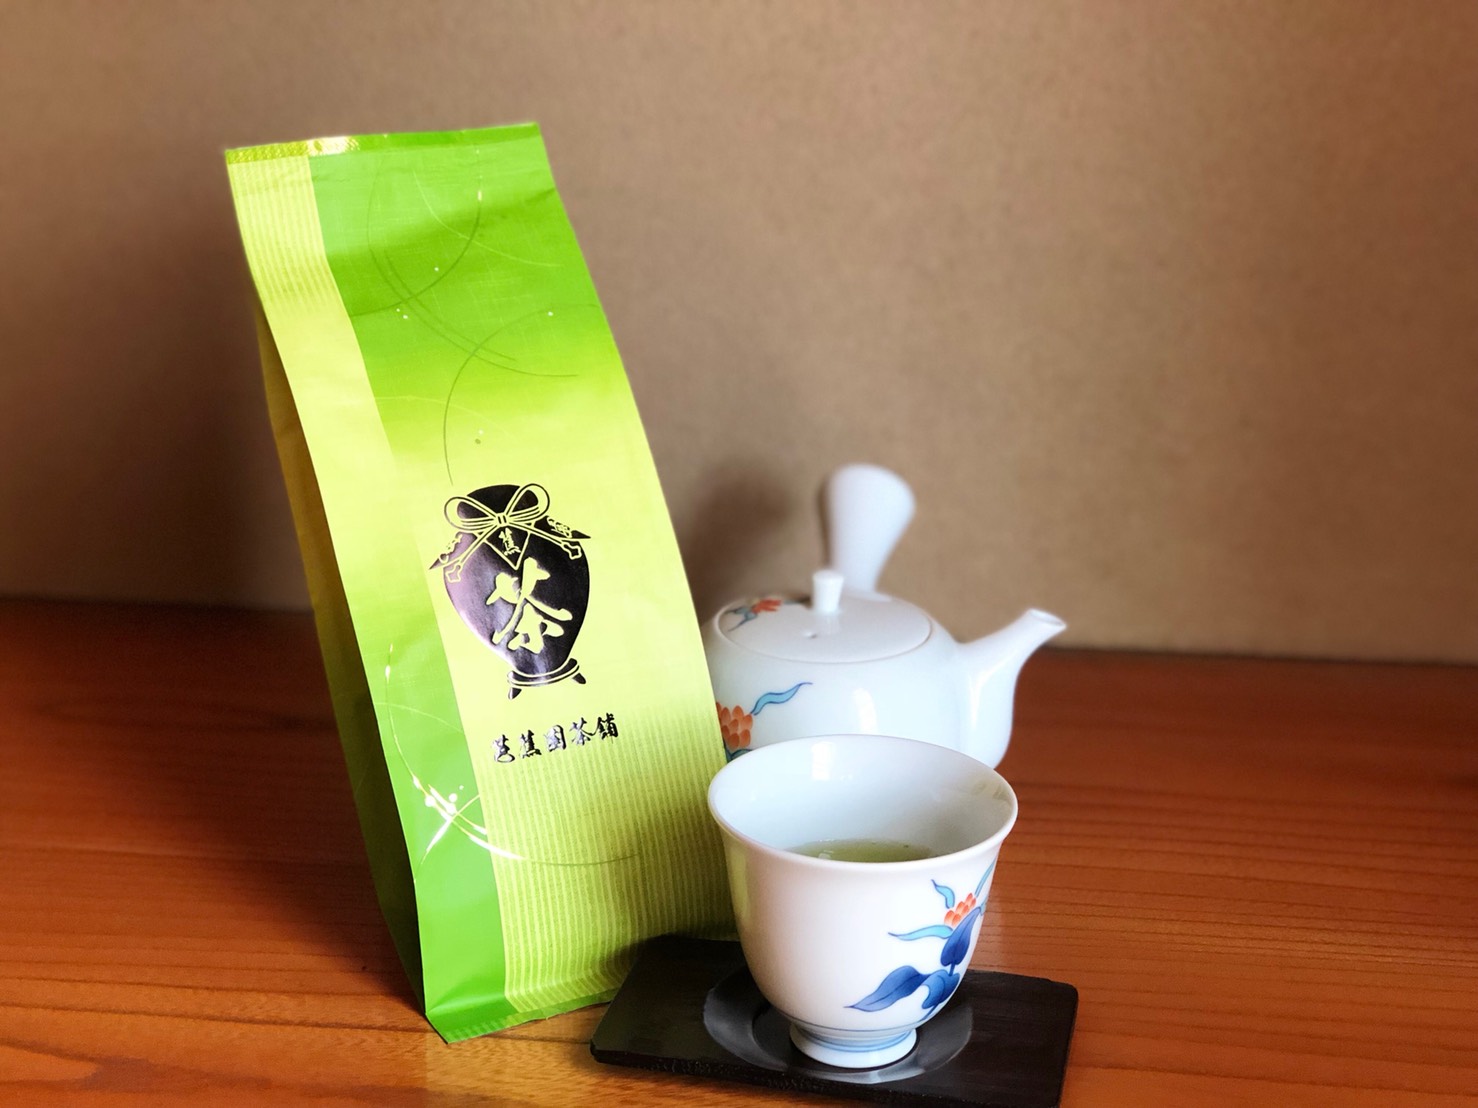 その他 仙台 芭蕉園茶舗 仙台の国分町の老舗茶舗 お茶屋です